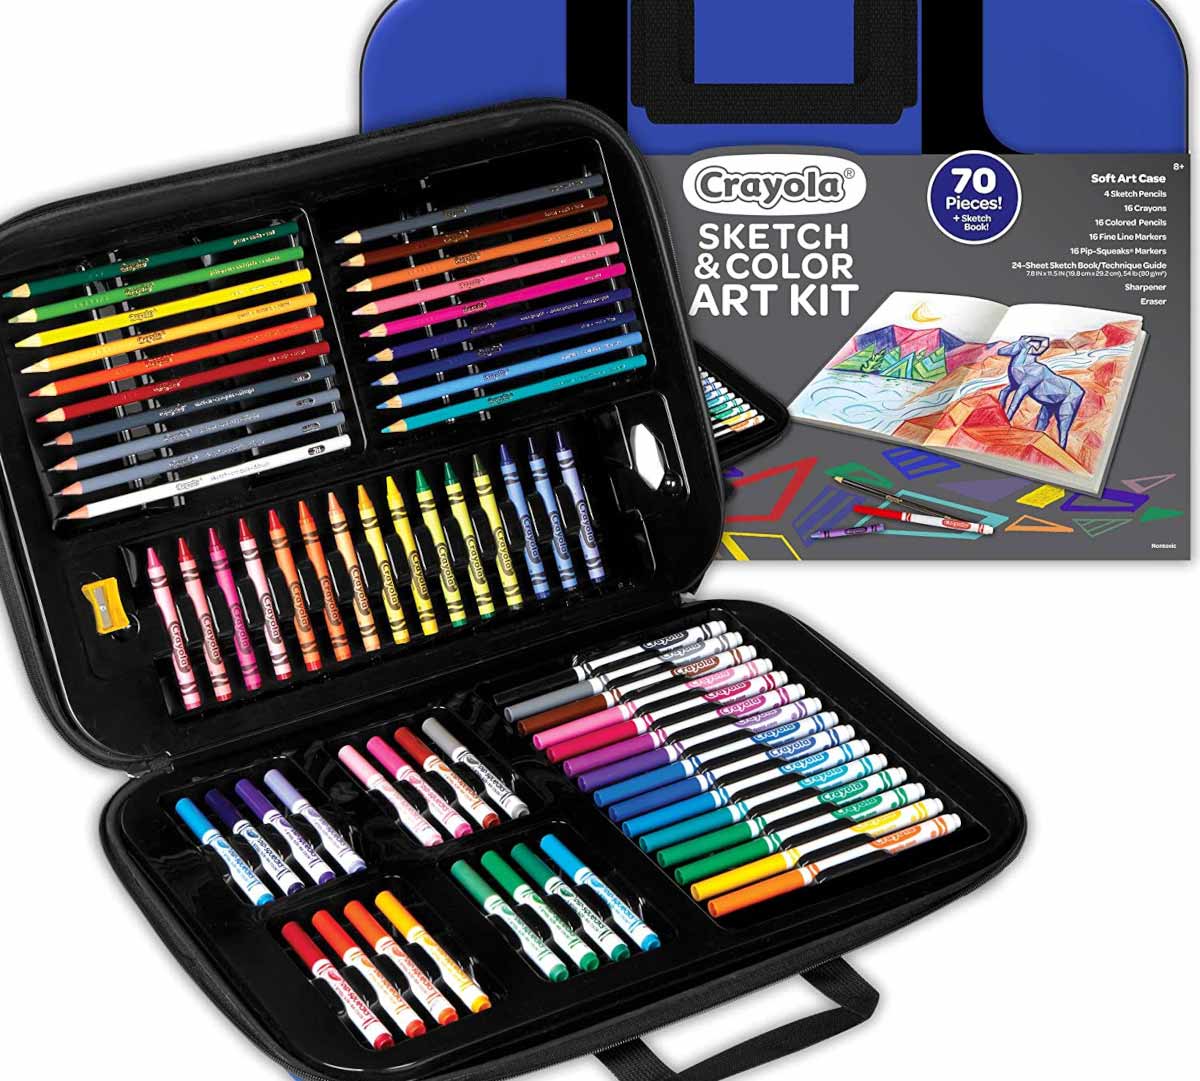 https://shop.crayola.com/on/demandware.static/-/Sites-crayola-storefront/default/dw0d743ec6/images/04-1050_Sketch-&-Color-Art-Kit_PDP_MAIN.jpg